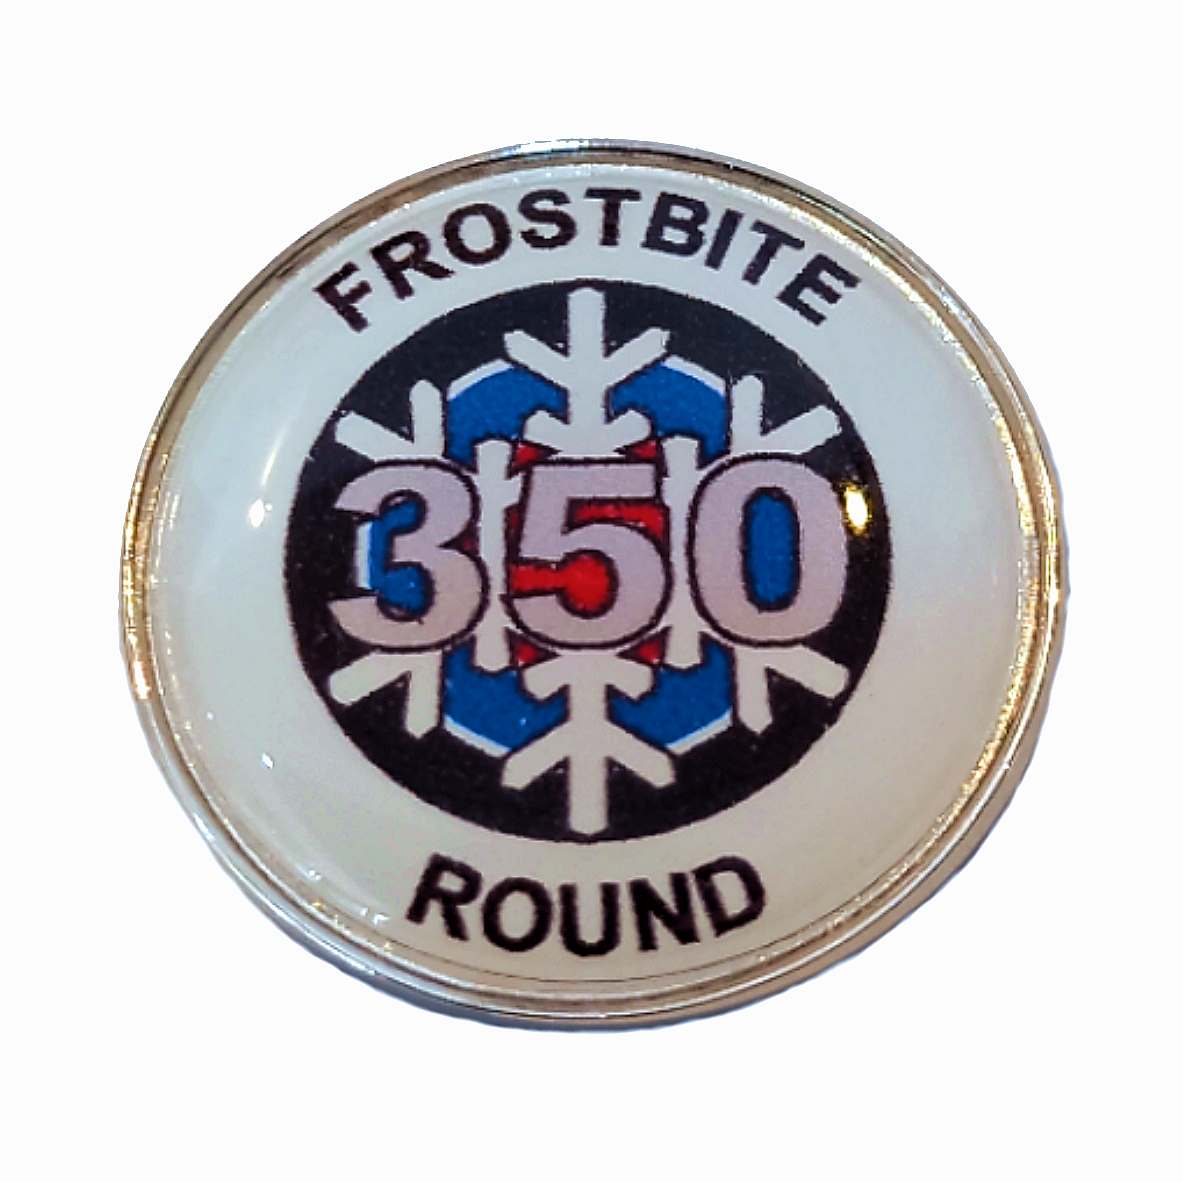 Frostbite Round standard badge